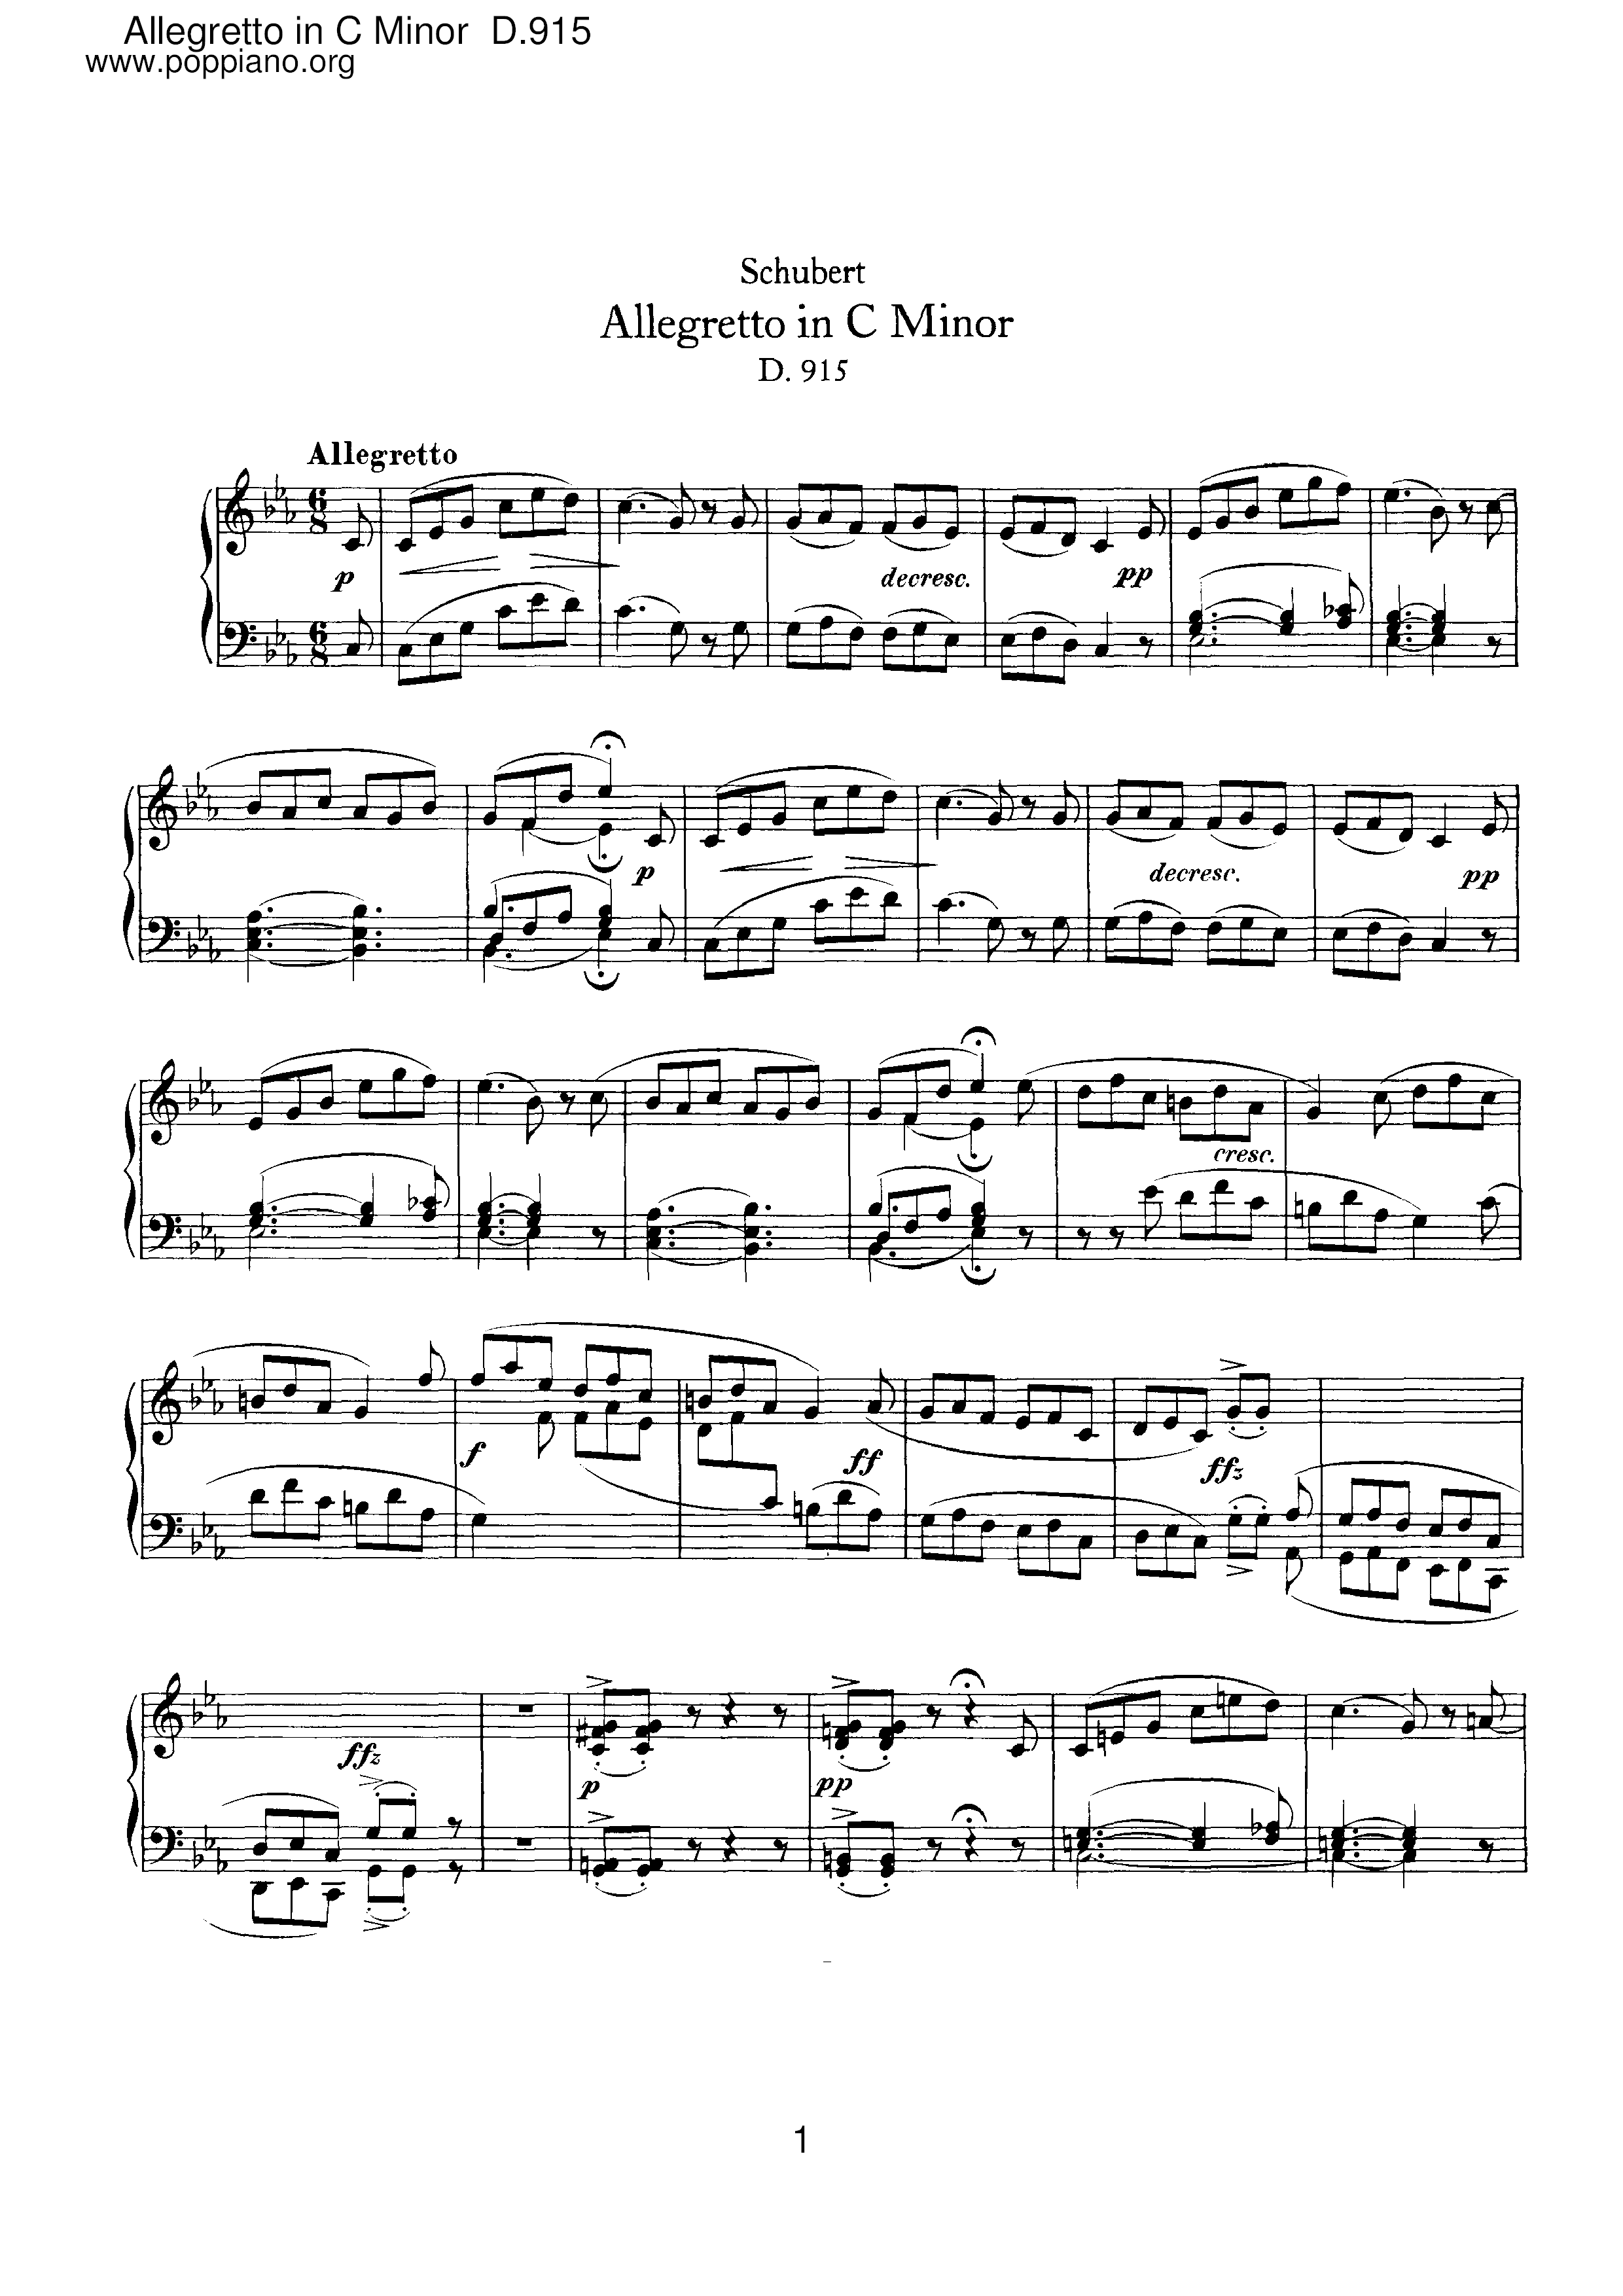 Allegretto in C minor, D.915ピアノ譜